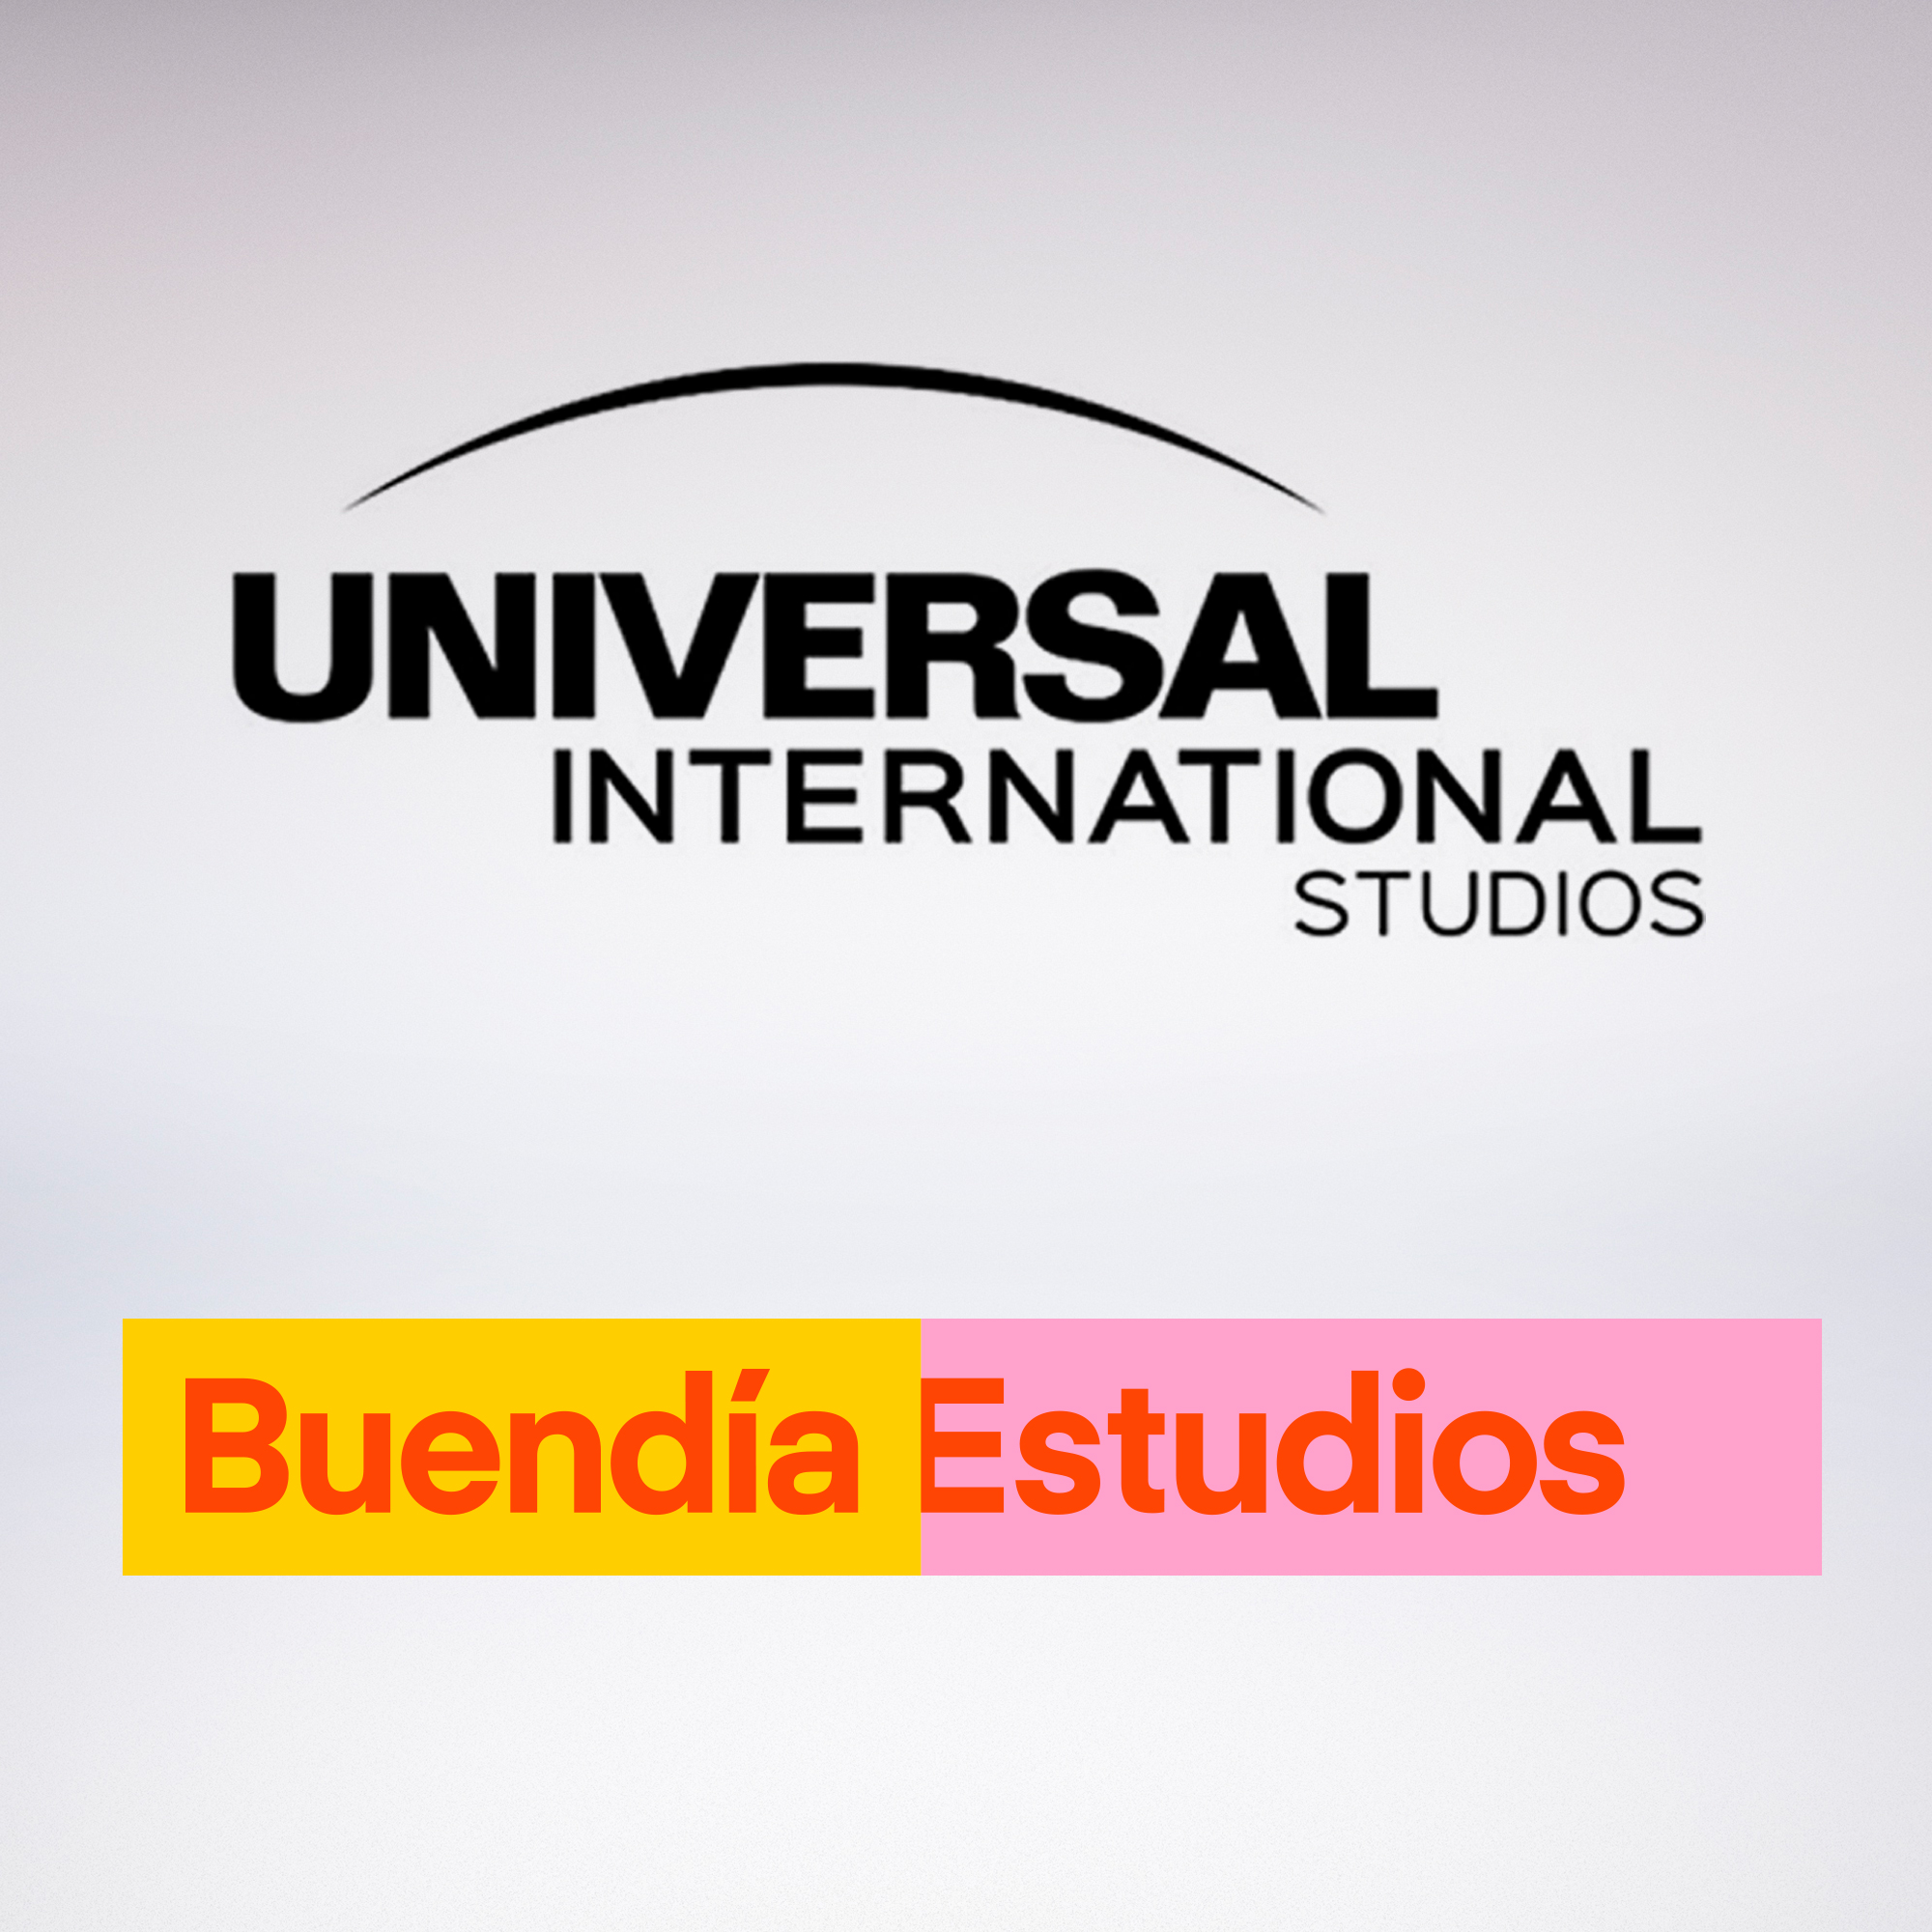 Buendía Estudios Universal